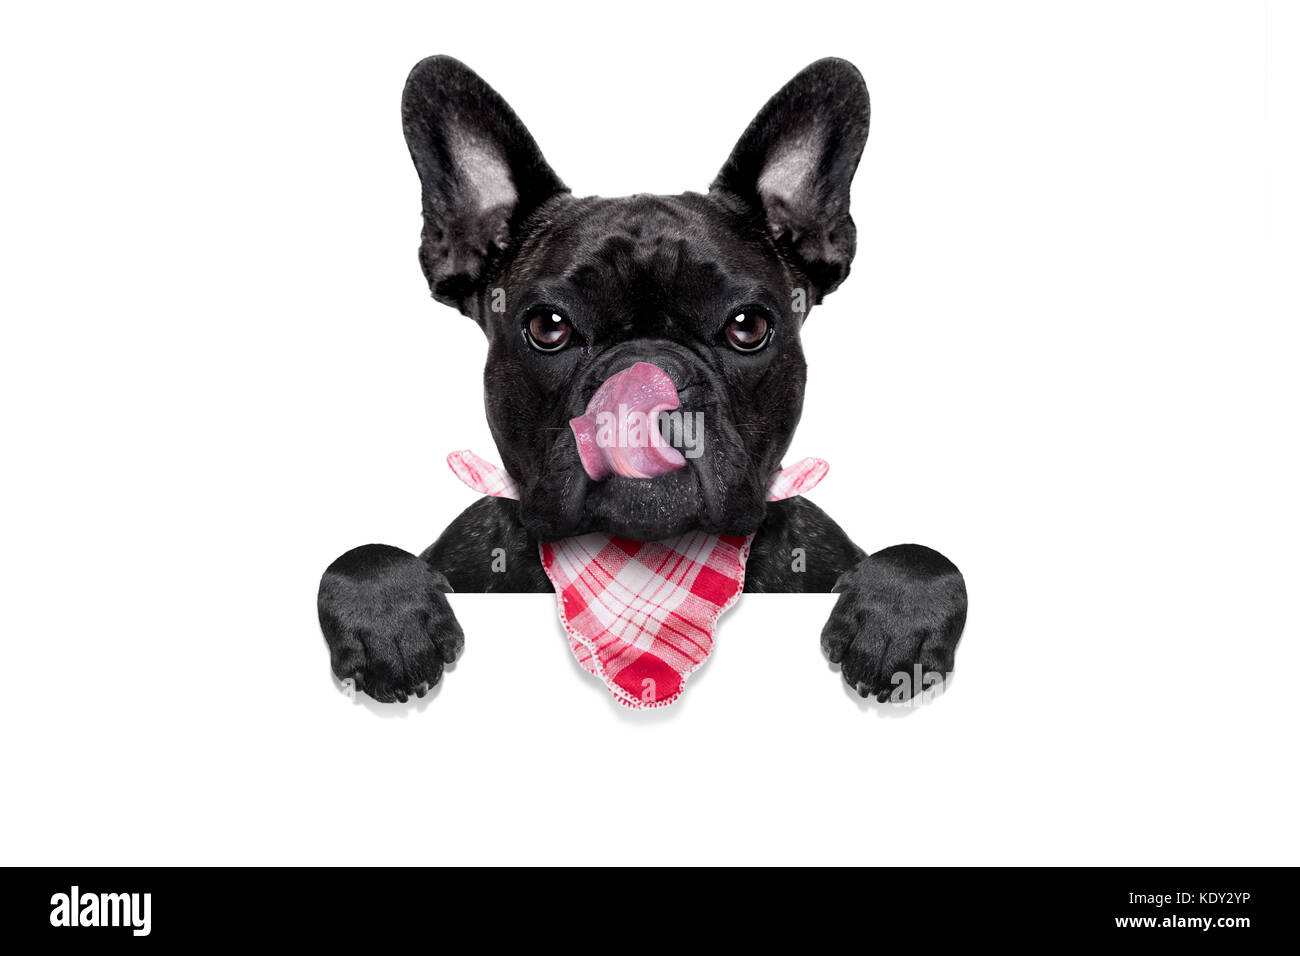 Hungrig französische Bulldogge Hund bereit, Dinner oder Lunch zu essen, hinter leeren Banner oder Plakat, Zunge heraus, auf weißem Hintergrund Stockfoto